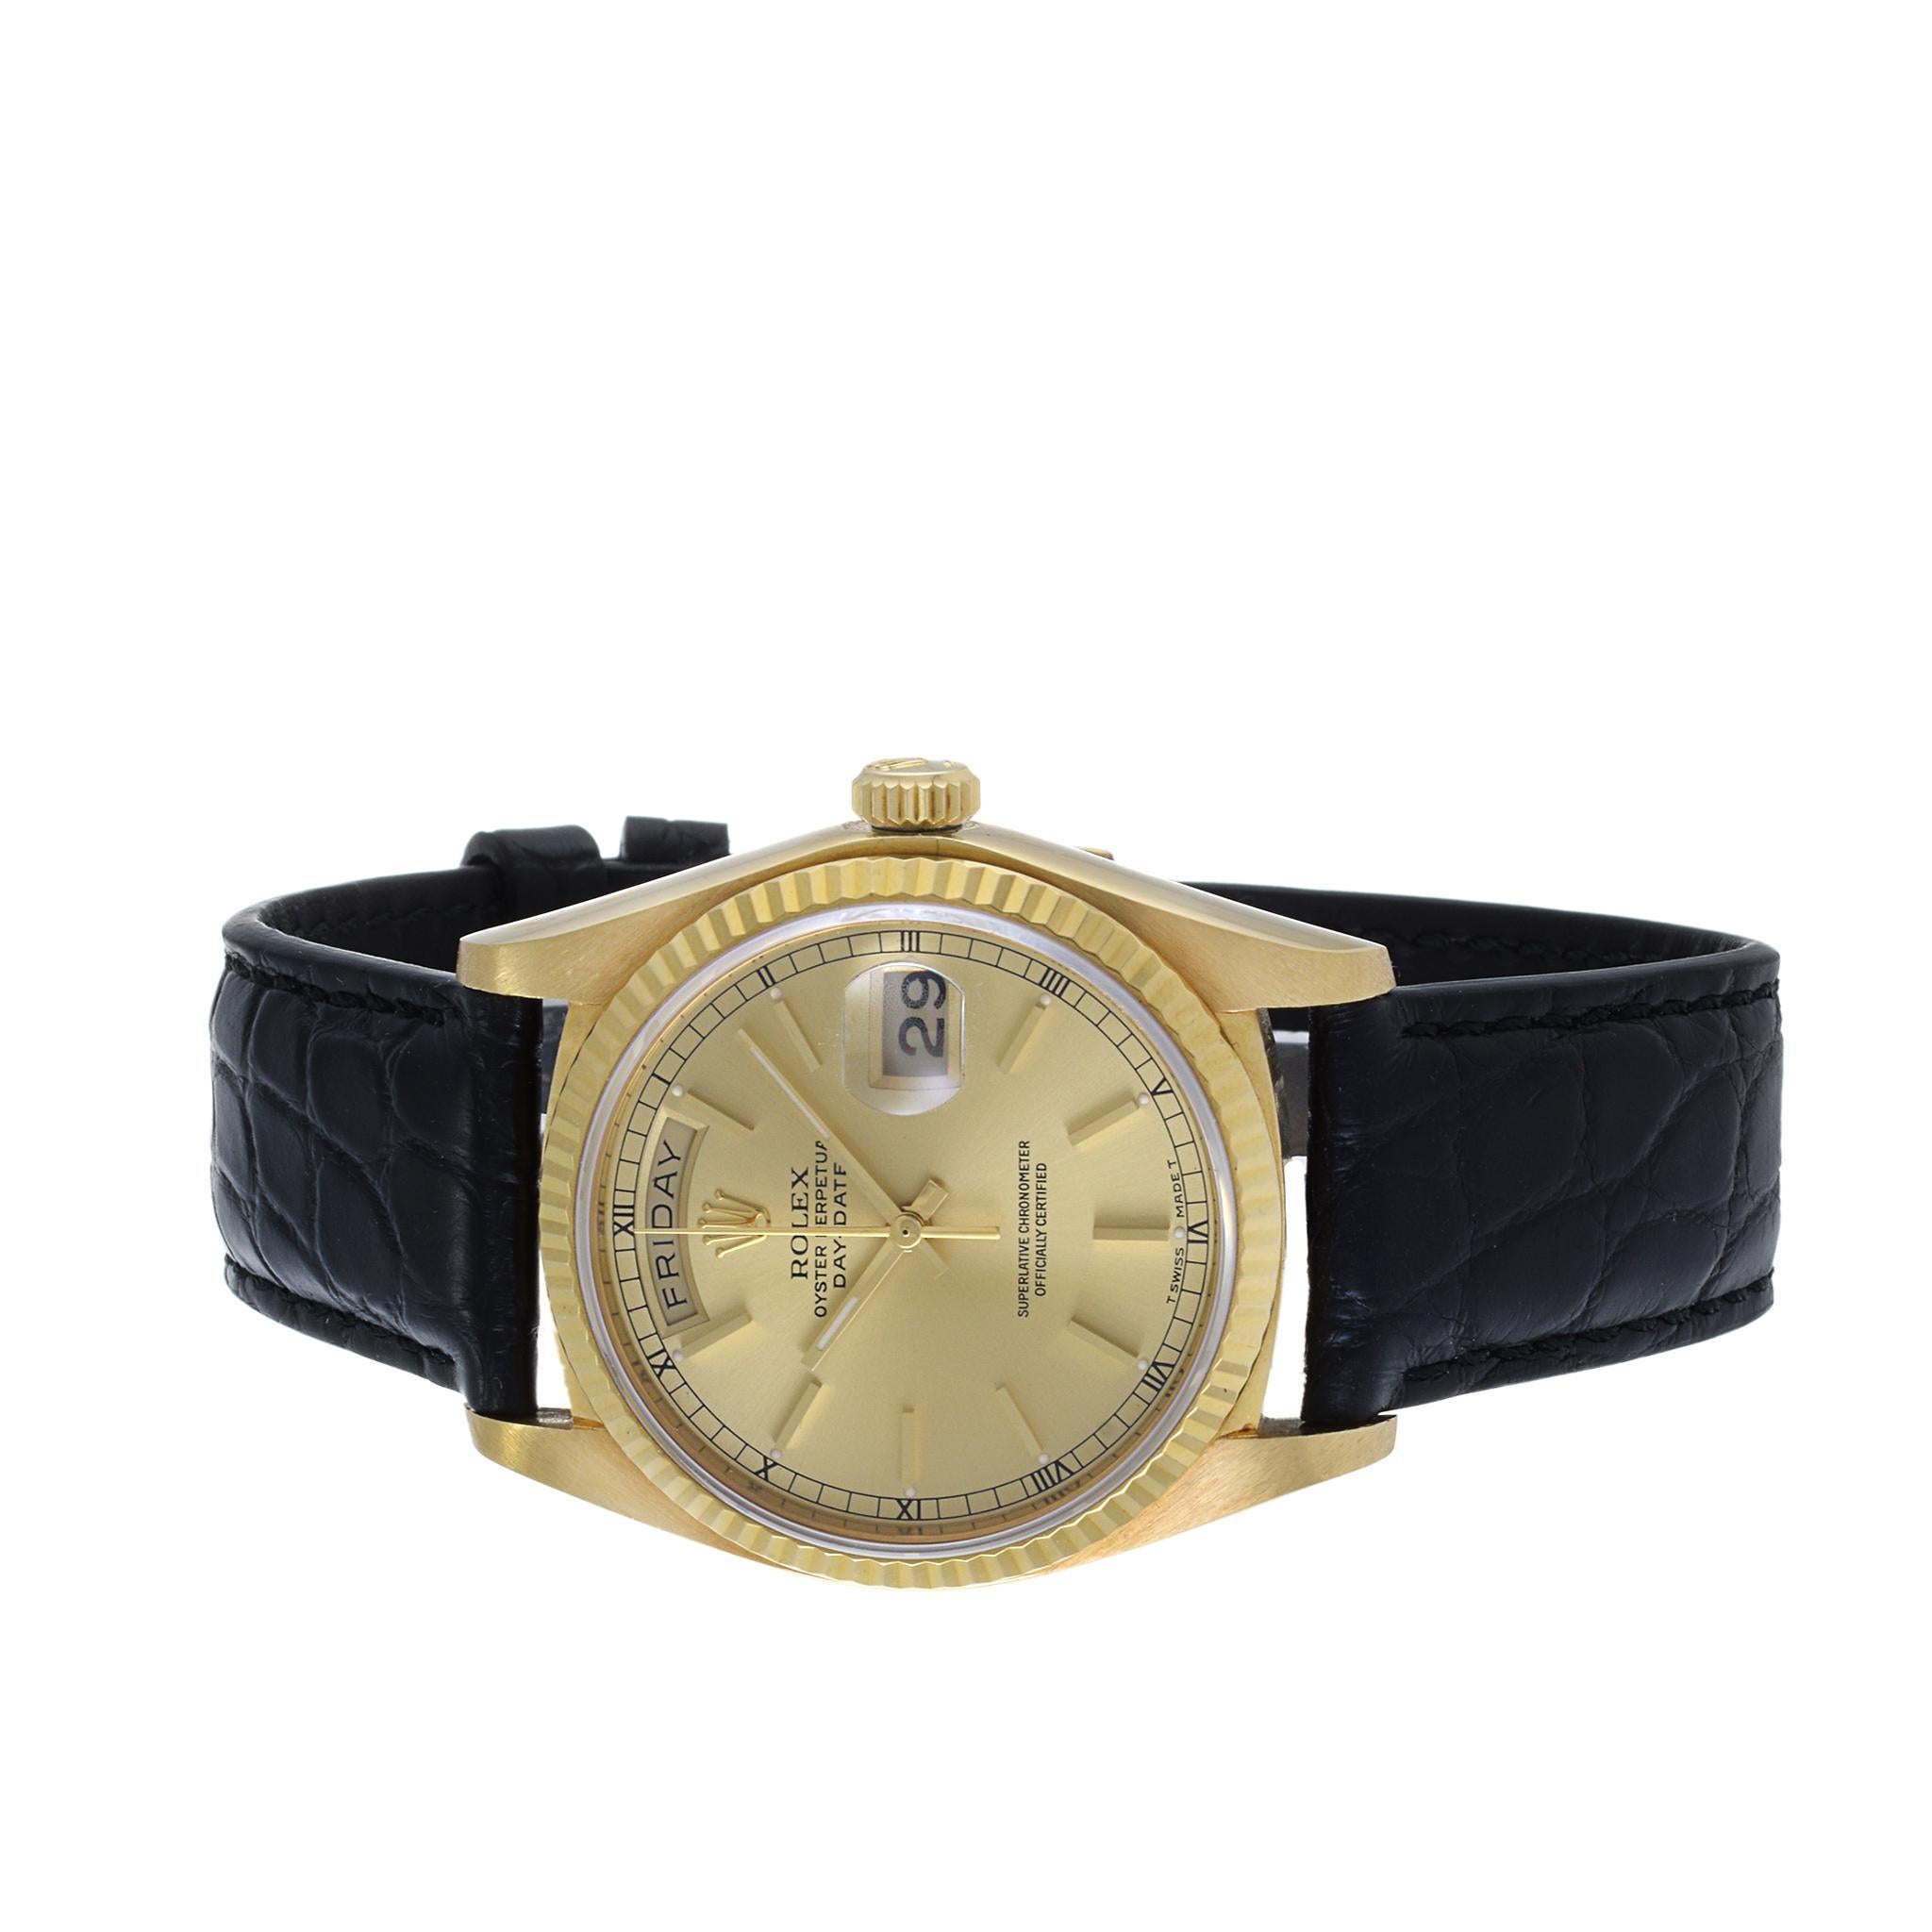 1970 gold rolex watch